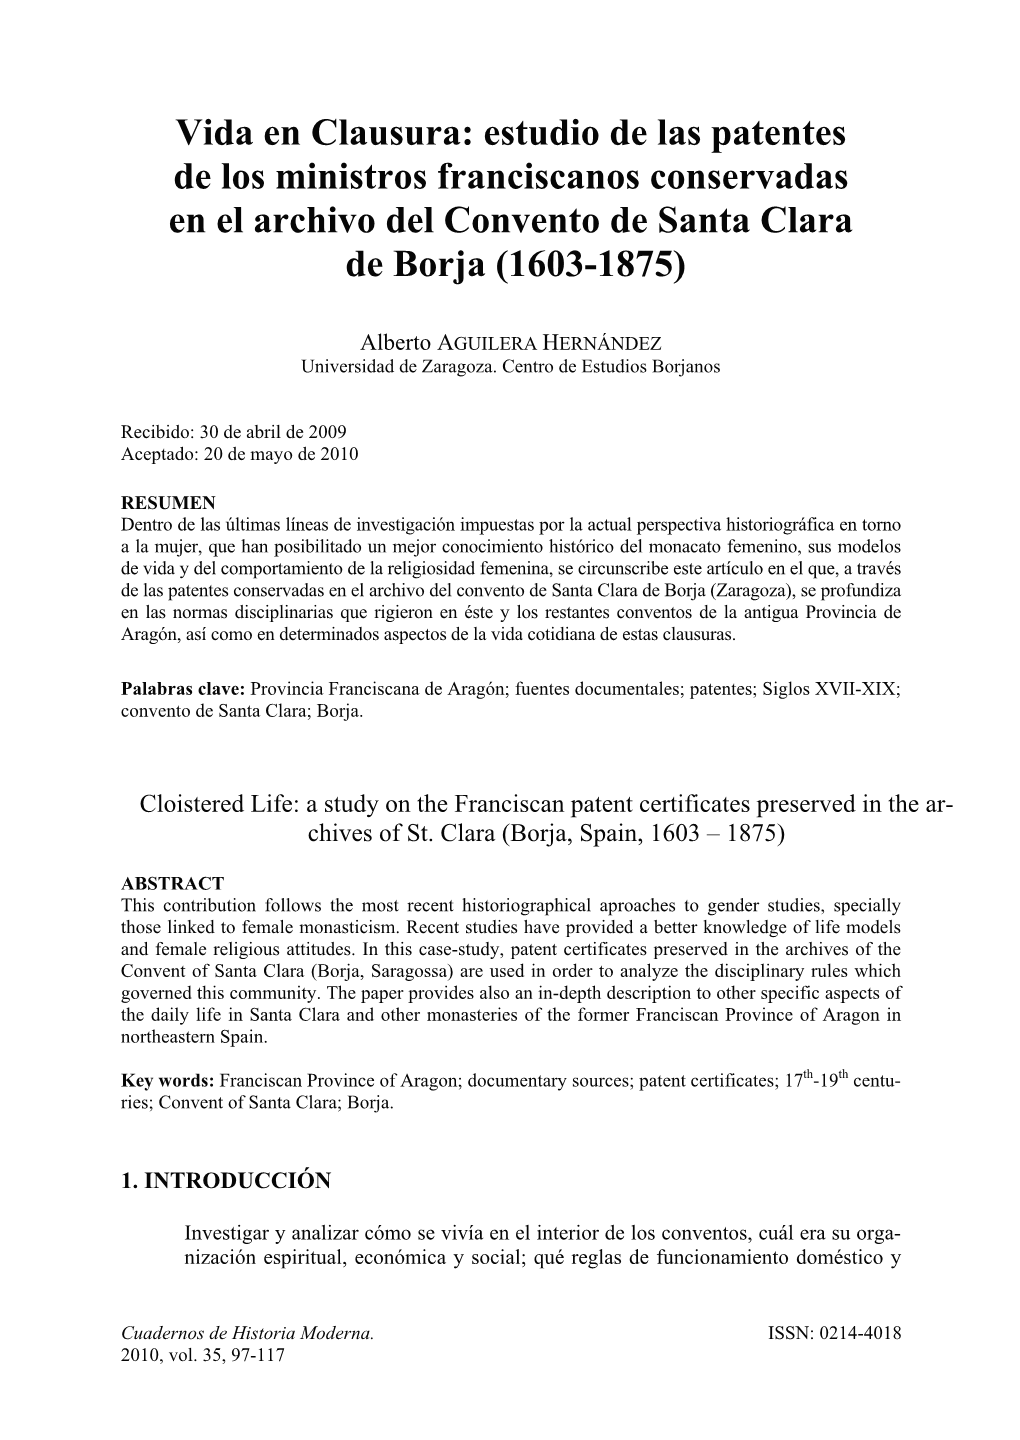 Vida En Clausura: Estudio De Las Patentes De Los Ministros Franciscanos Conservadas En El Archivo Del Convento De Santa Clara De Borja (1603-1875)